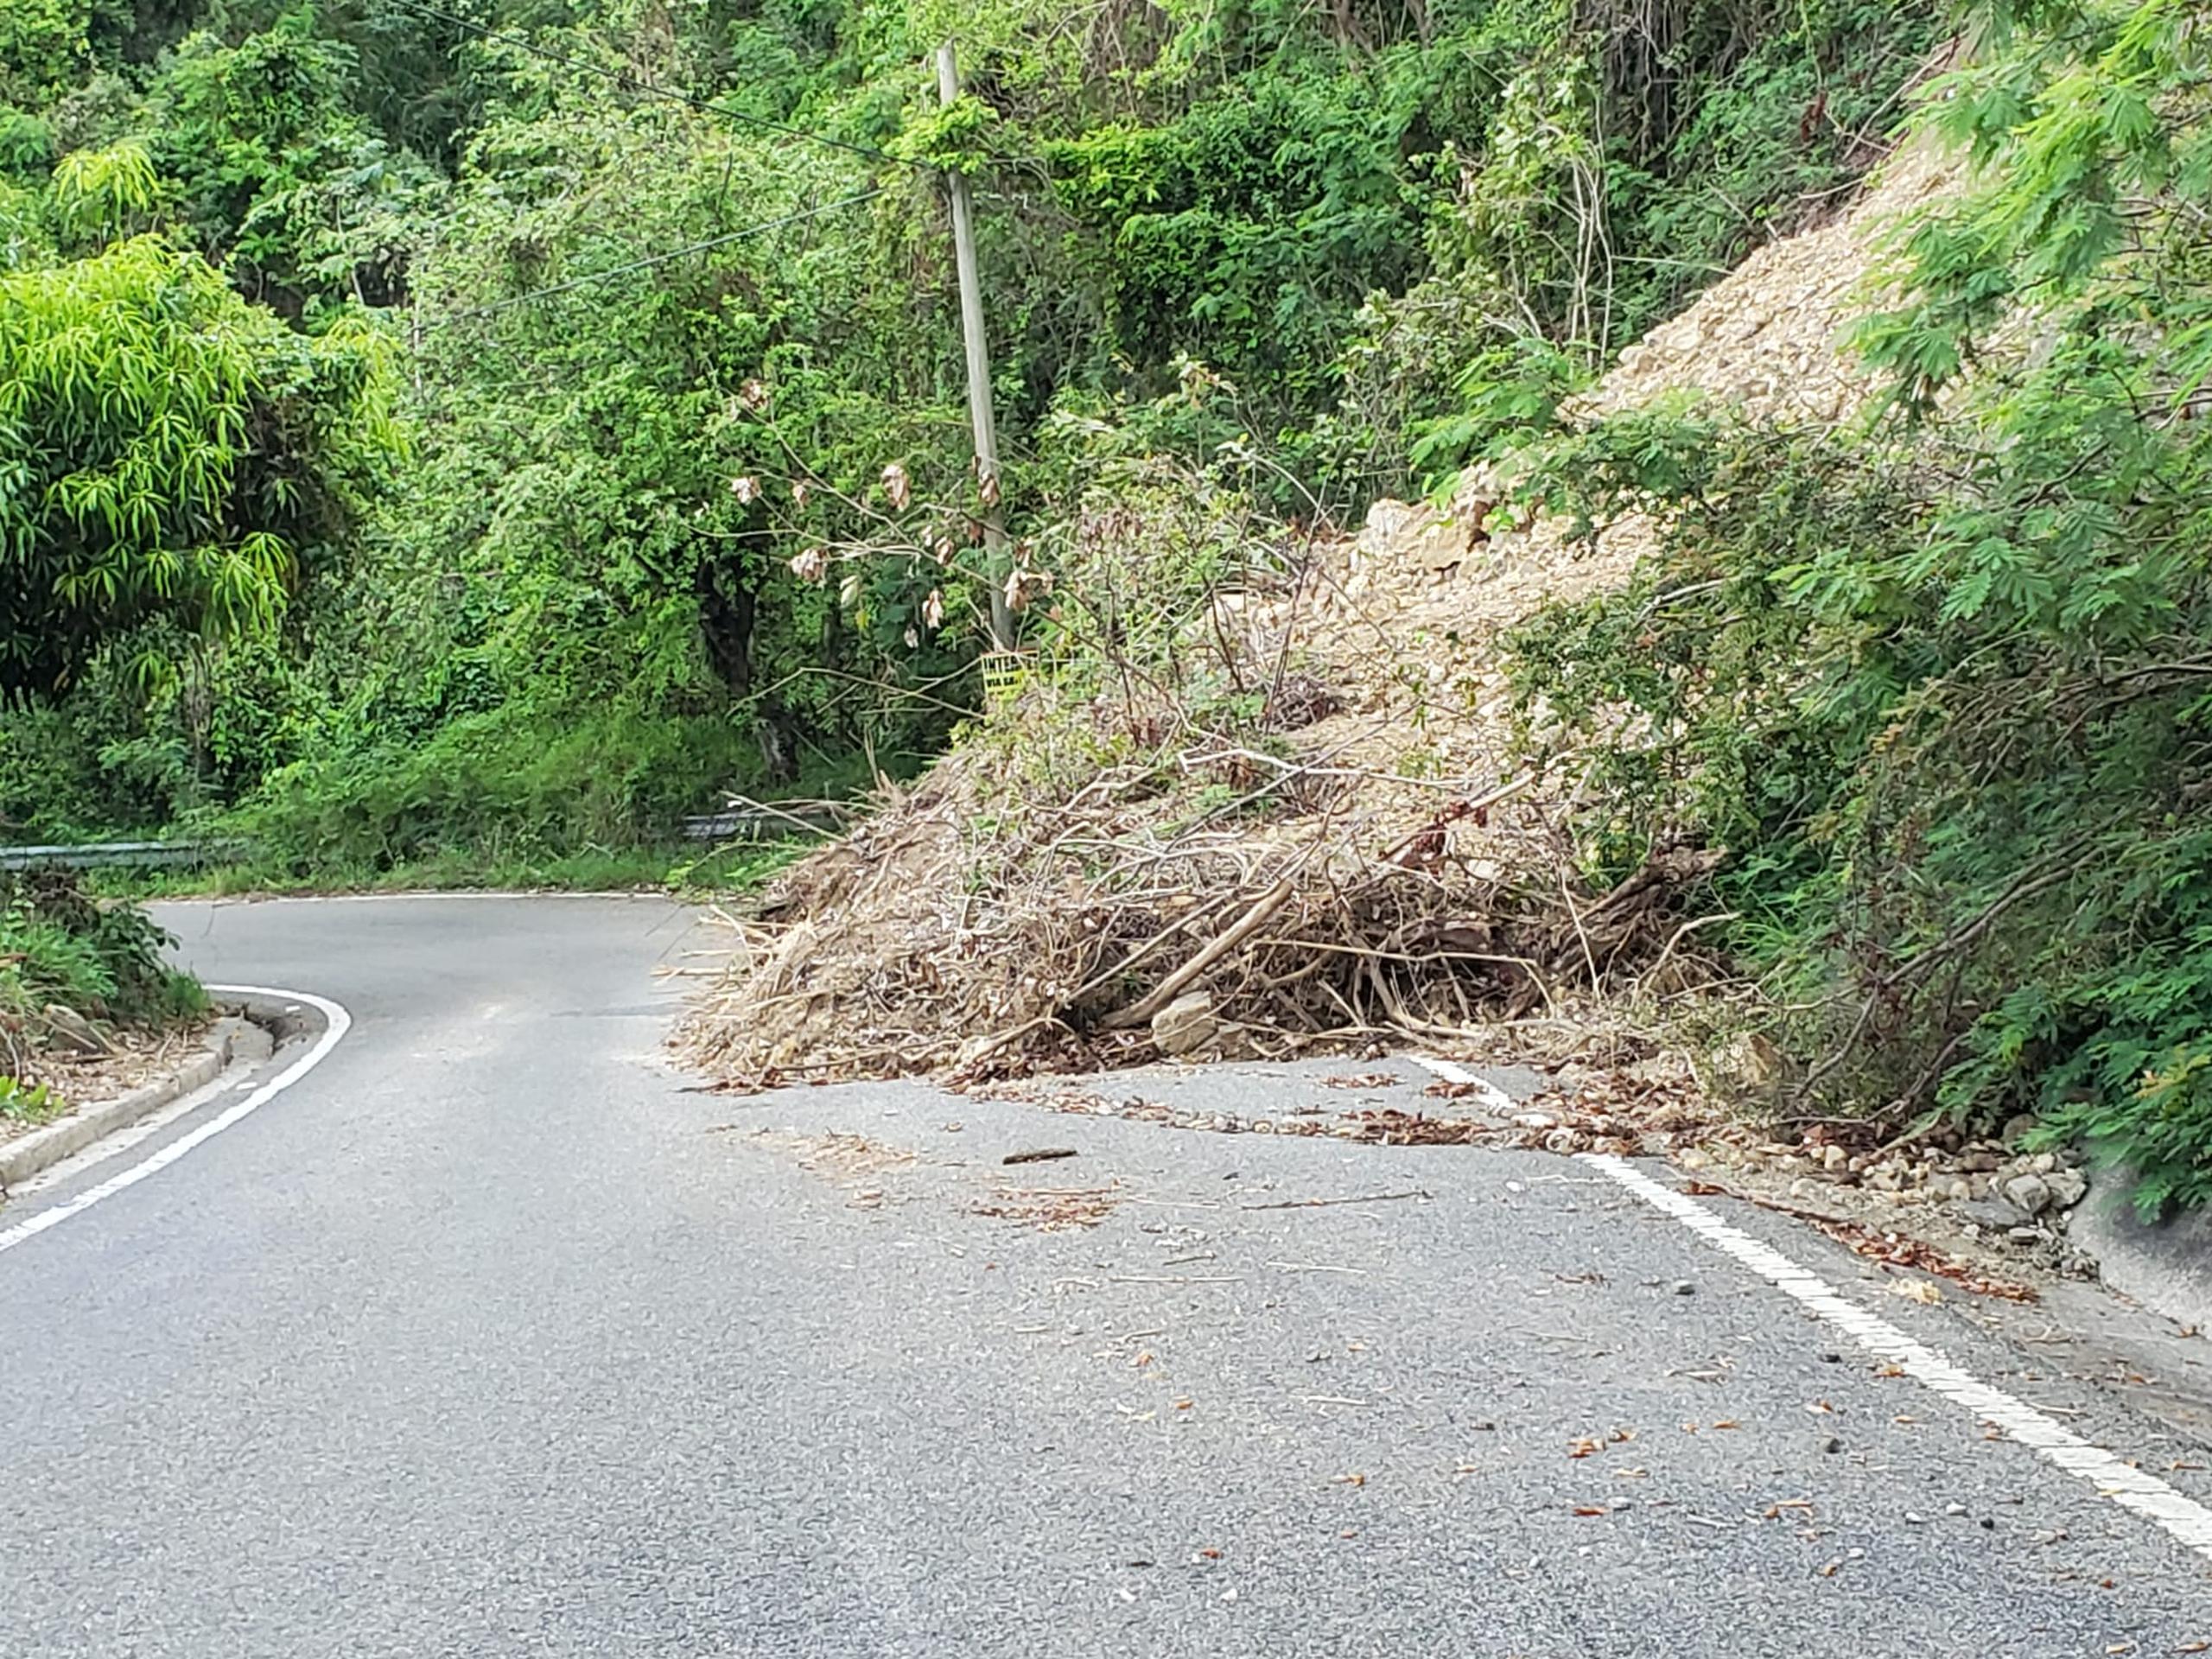 La carretera de acceso a la zona, la PR-387, está plagada de derrumbes y árboles que amenazan con caer.